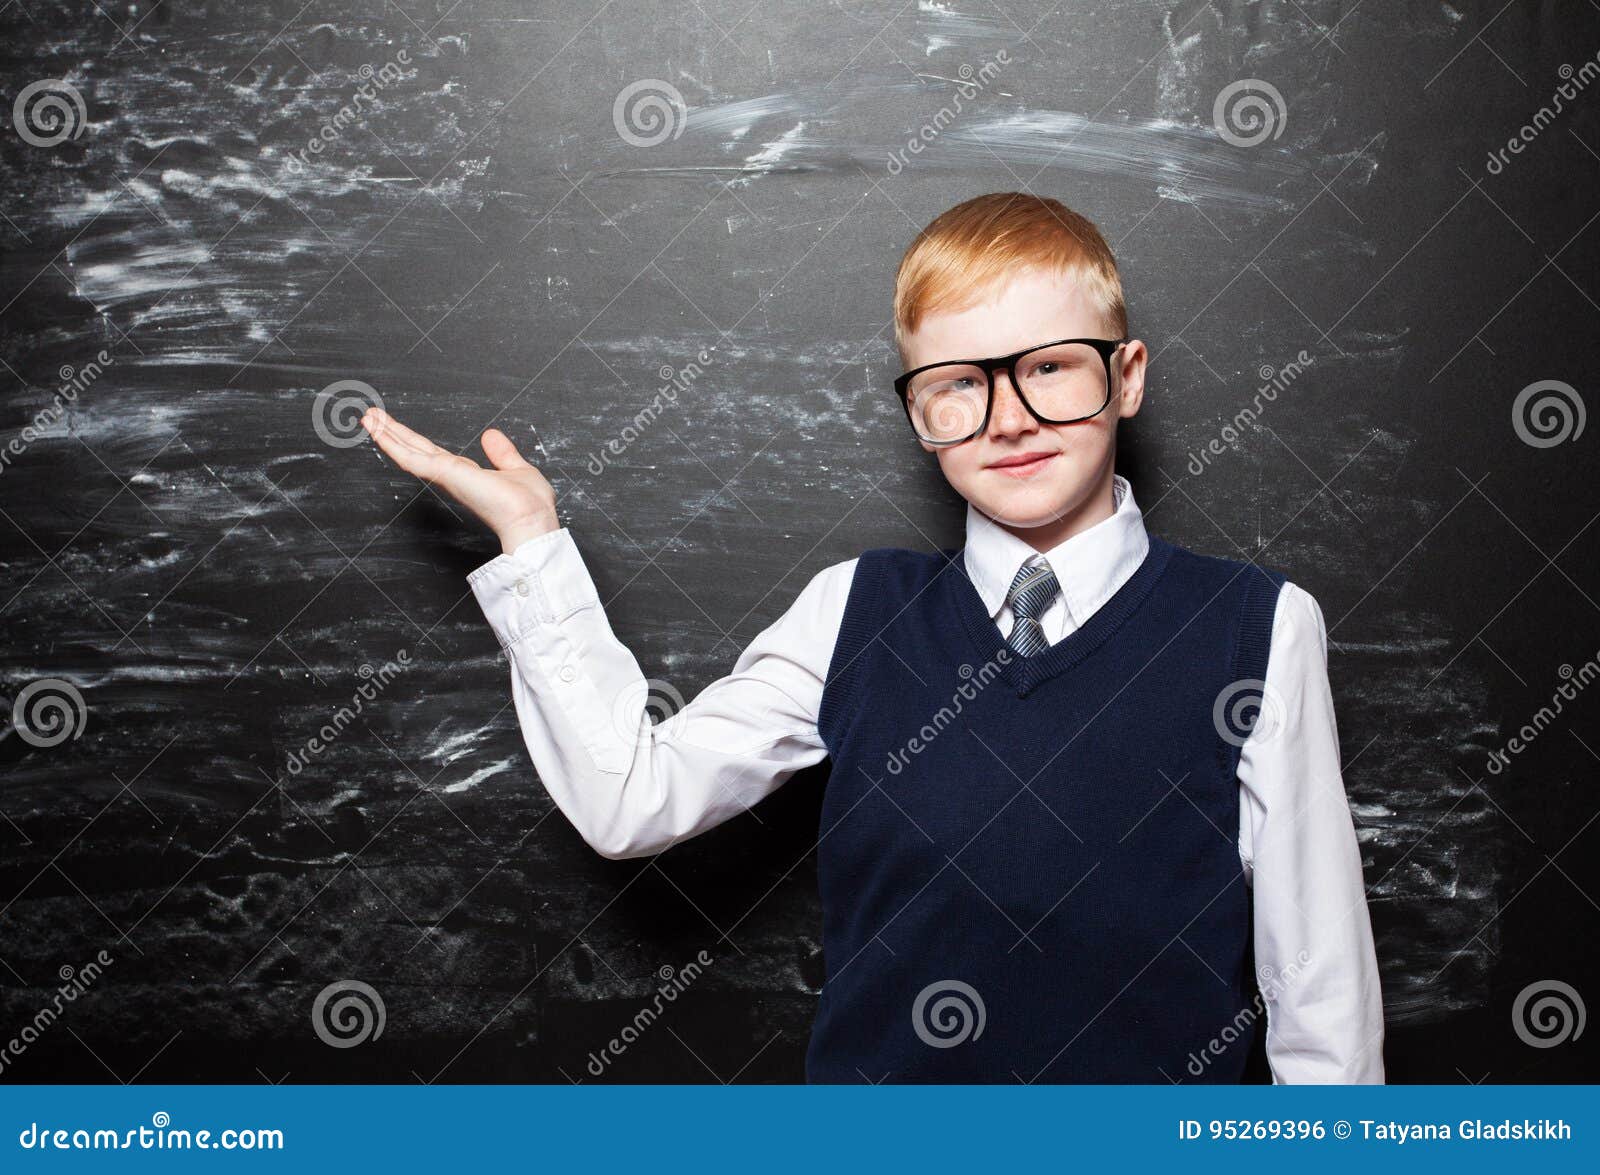 Schoolboy stock photo. Image of schoolboy, male, school - 95269396